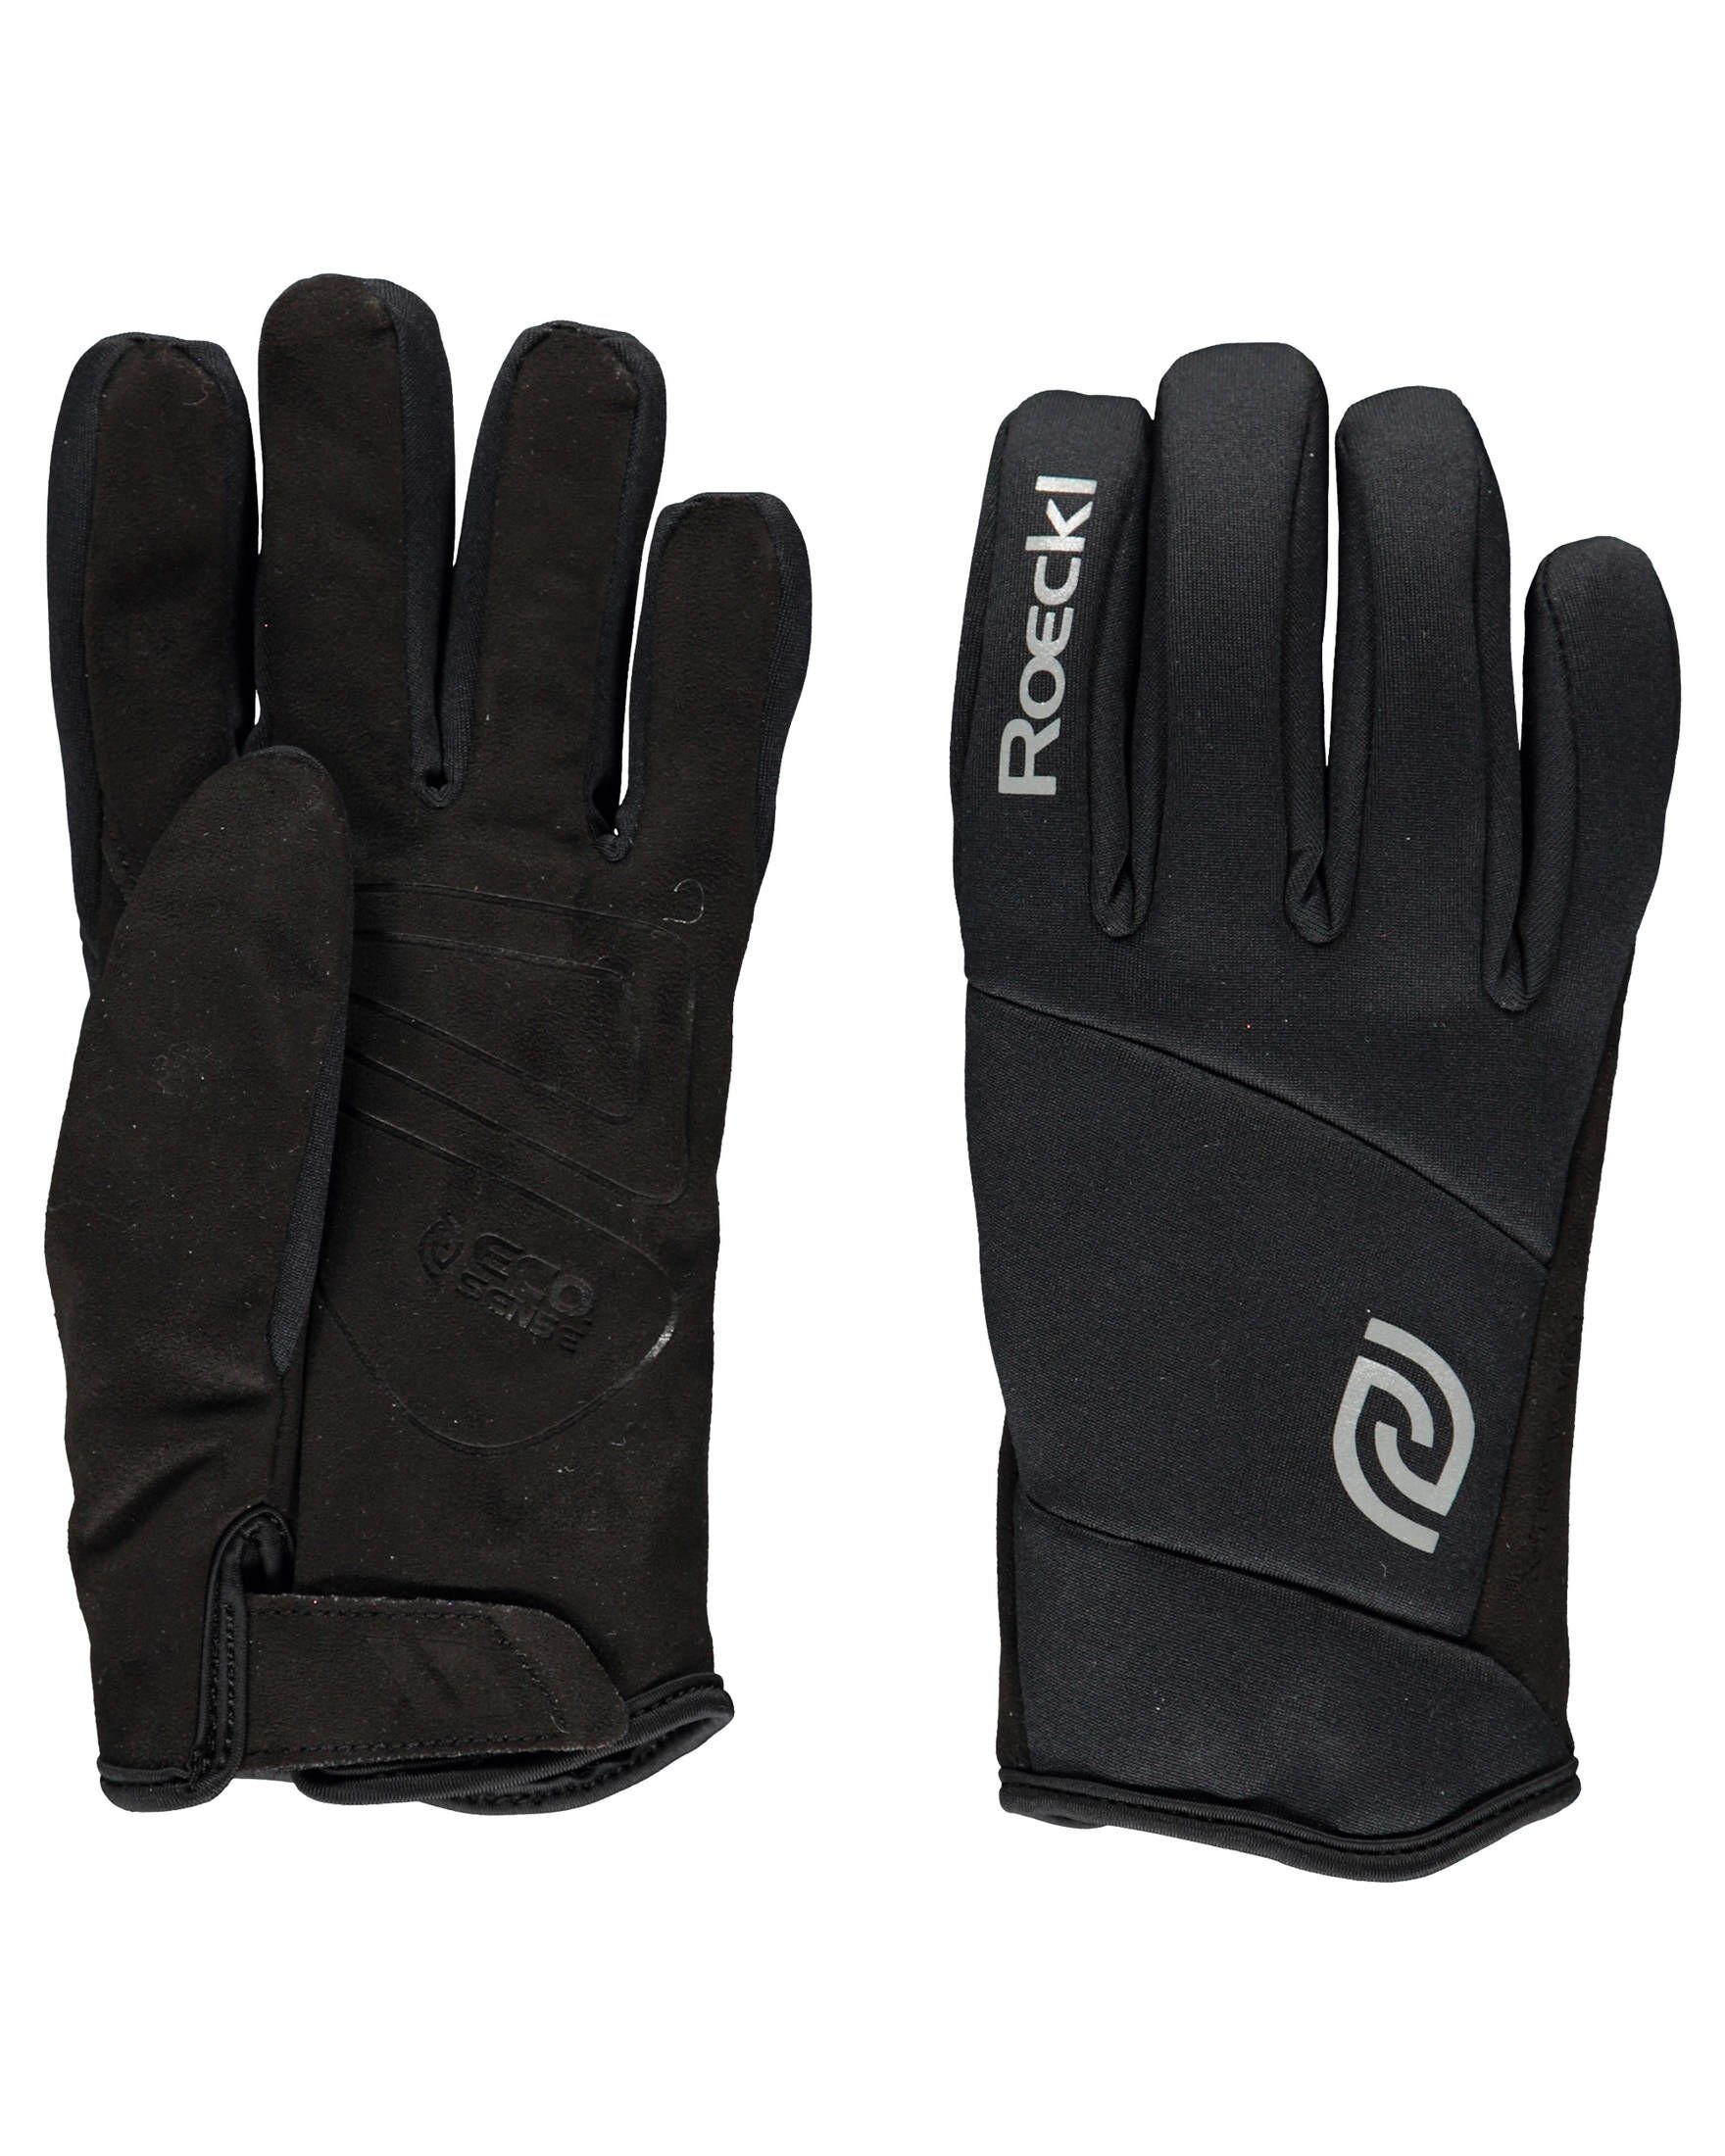 Roeckl SPORTS Fahrradhandschuhe Handschuhe schwarz (200) VALEPP Fahrrad